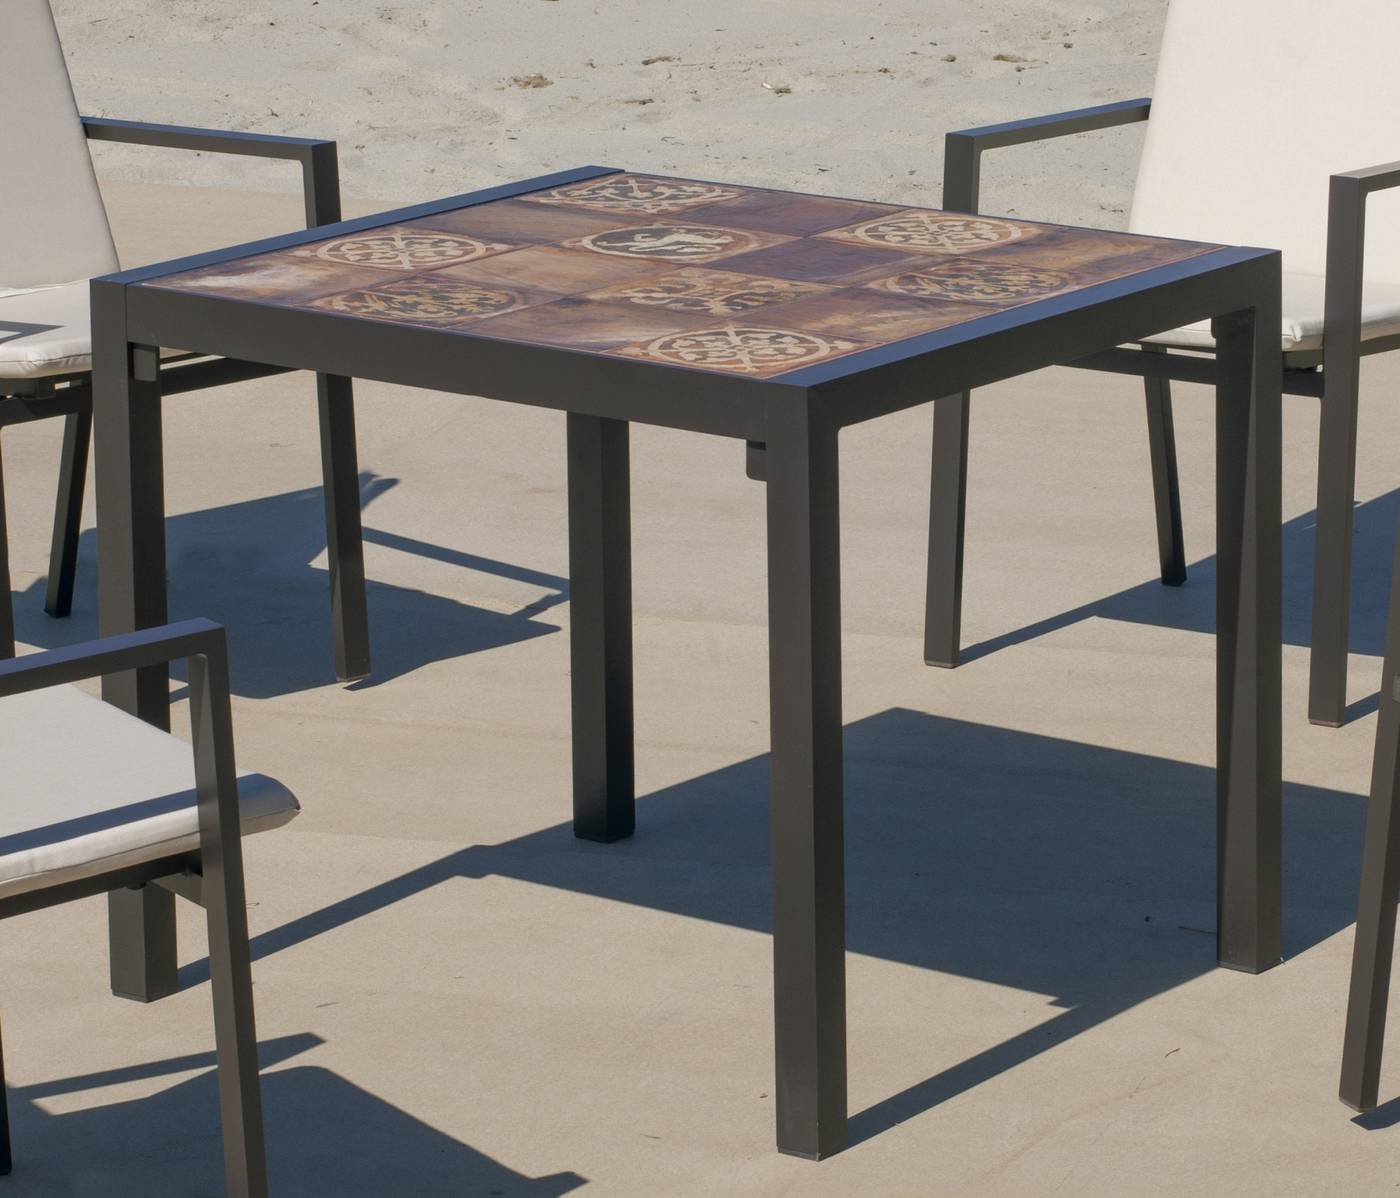 Set Lomba-80-4 Córcega - Conjunto de aluminio color marrón: Mesa cuadrada con tablero mosaico de 80 cm + 4 sillones de textilen.